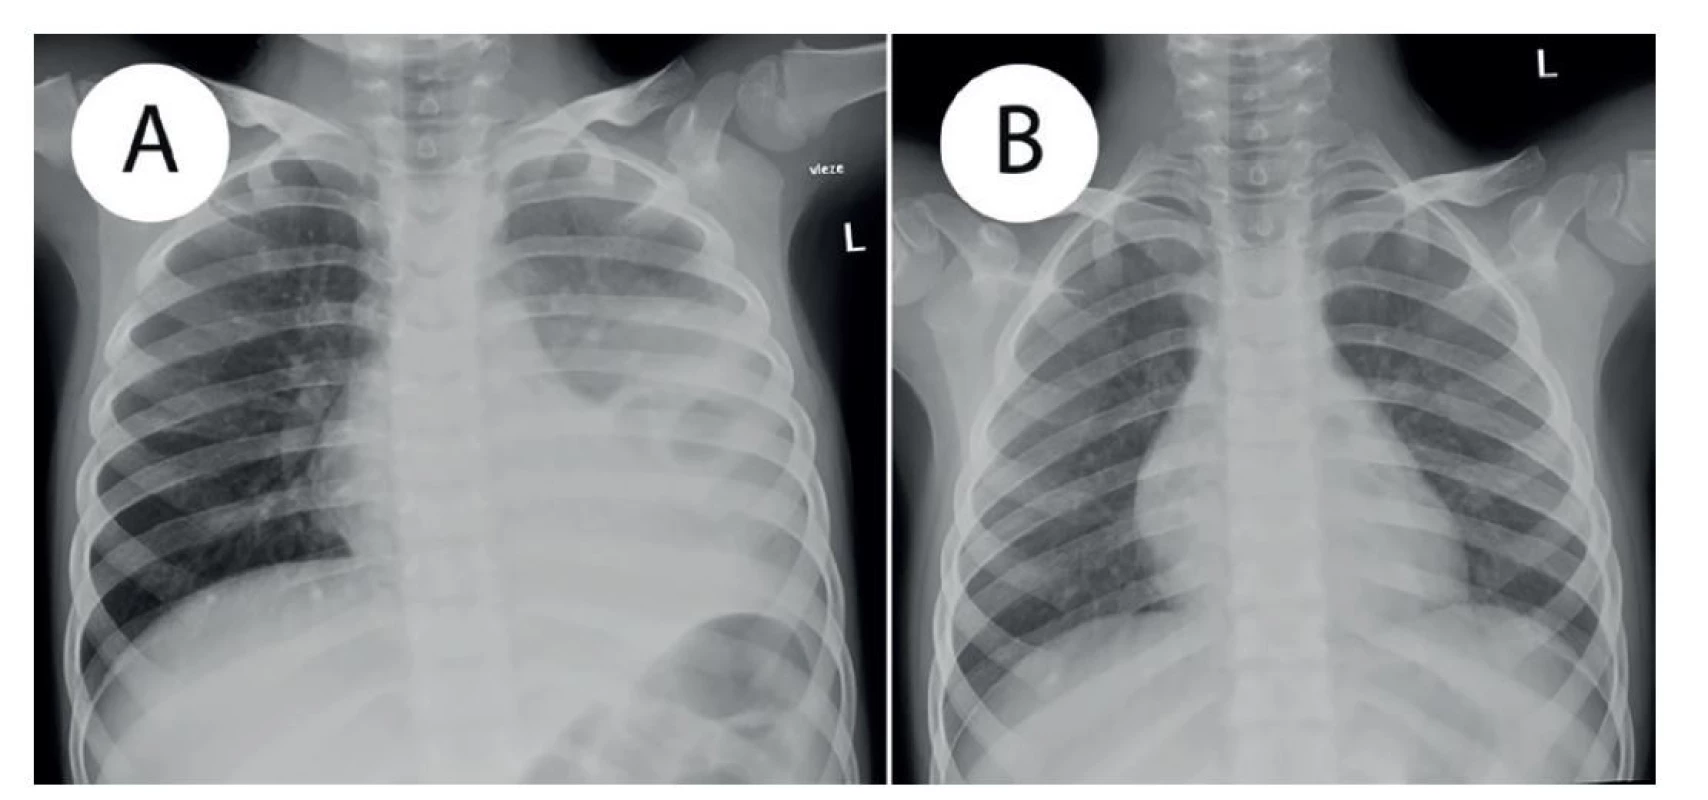 a) Prostý RTG snímek hrudníku v AP projekci, vleže − st. p. levostranné pleuropneumonii s parciálním provzdušněním
horního a středního plicního pole, b) Prostý RTG snímek hrudníku v AP proj., vleže − kontrolní snímek
4 měsíce po prodělané levostranné pleuropneumonii, restituce ad integrum.<br>
Fig. 3: a) Plain chest radiograph, AP view, supine − st. p. left sided pleuropneumonia with a partial improvement of
aeration in the upper and middle lobes; b) Plain chest radiograph, AP view, supine − FU examination 4 months after
left sided pleuropneumonia; complete normalization of the findings.